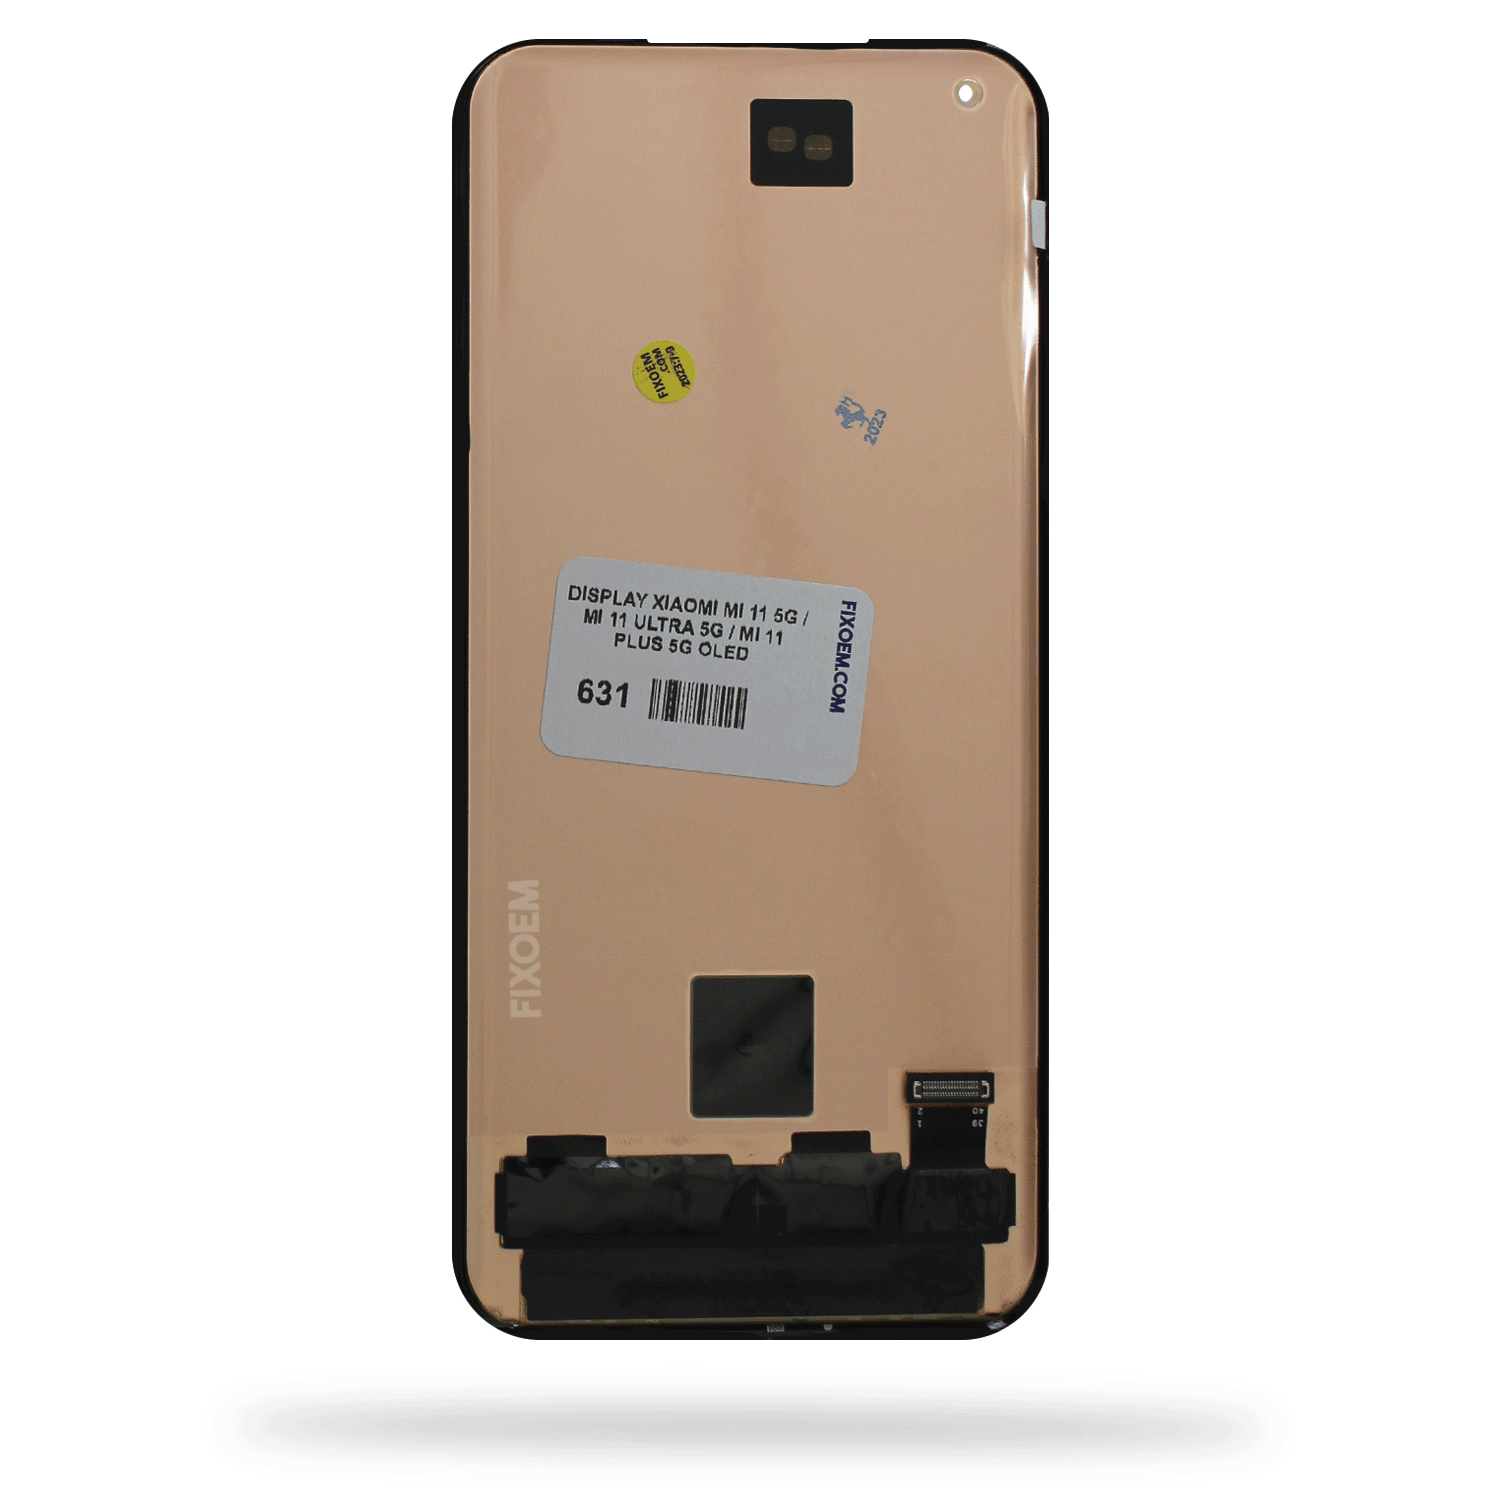 Display Xiaomi Mi 11 5G 2021 M2011k2g / Mi 11 Ultra 5G 2021 M2102k1c / Mi 11 Pro 2021 5G M2102k1ac Oled a solo $ 3970.00 Refaccion y puestos celulares, refurbish y microelectronica.- FixOEM